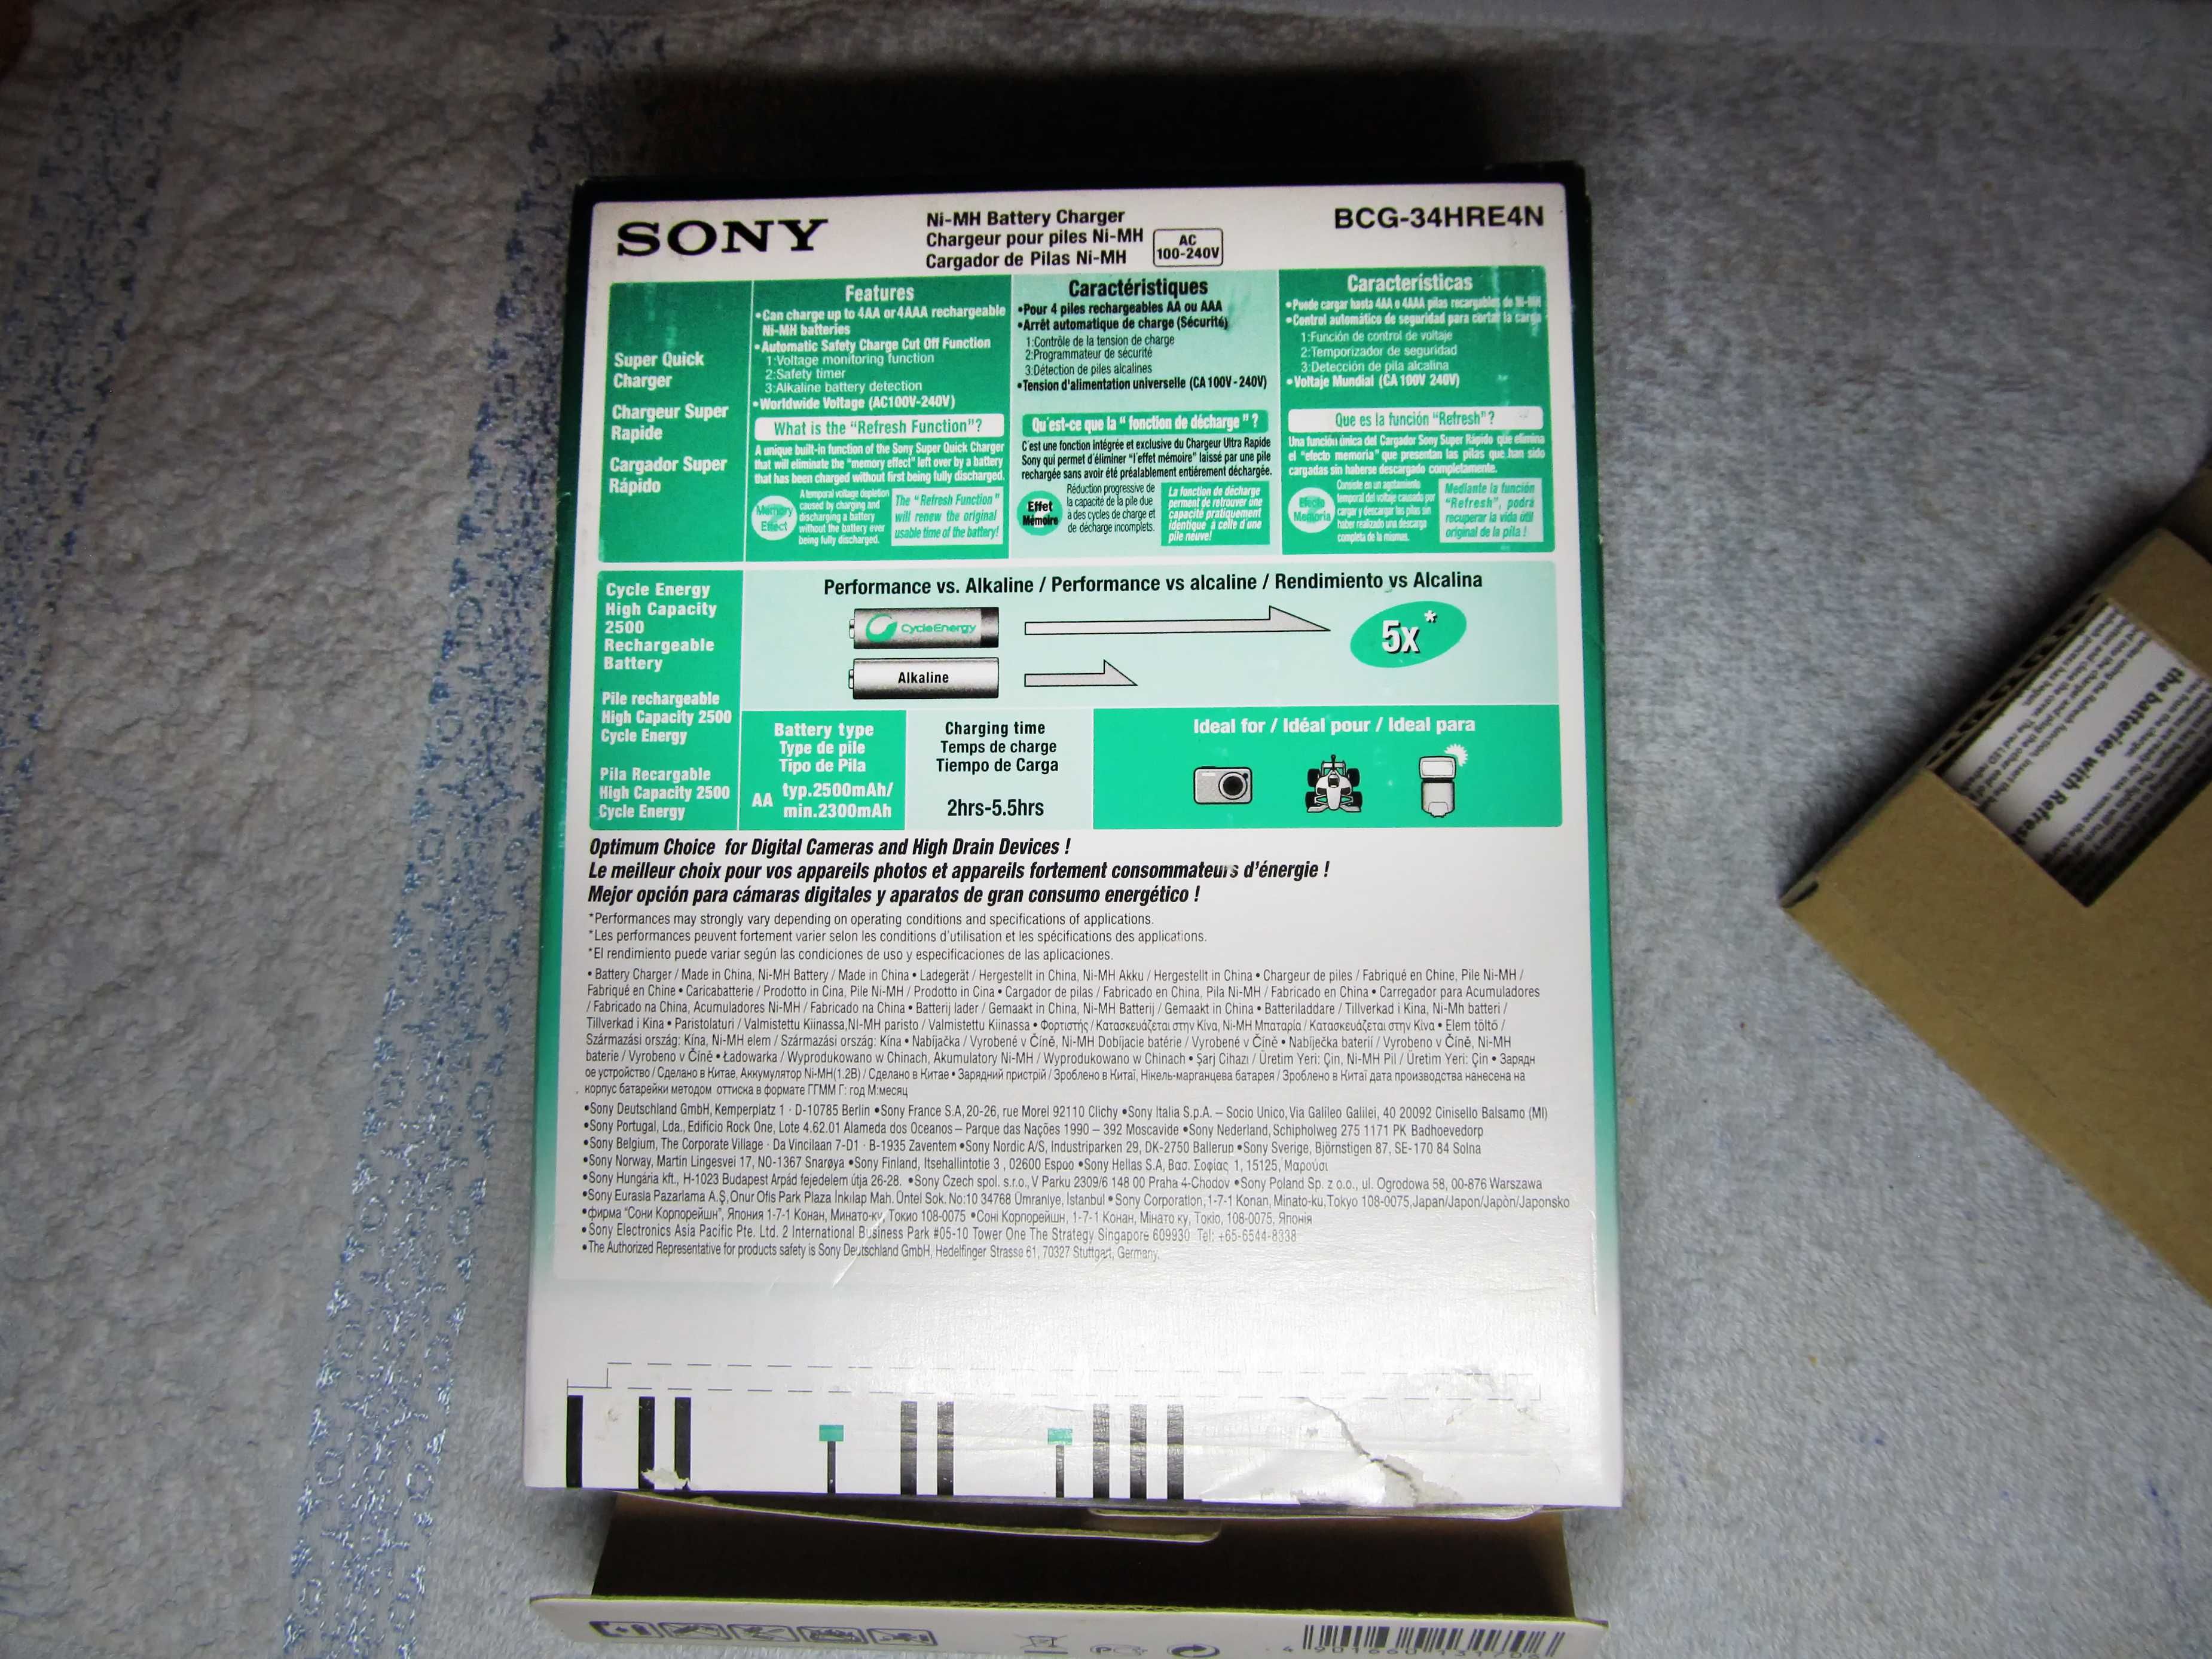 Зарядное устройство АА ААА Sony BCG-34HRE4N Super Quick Charger